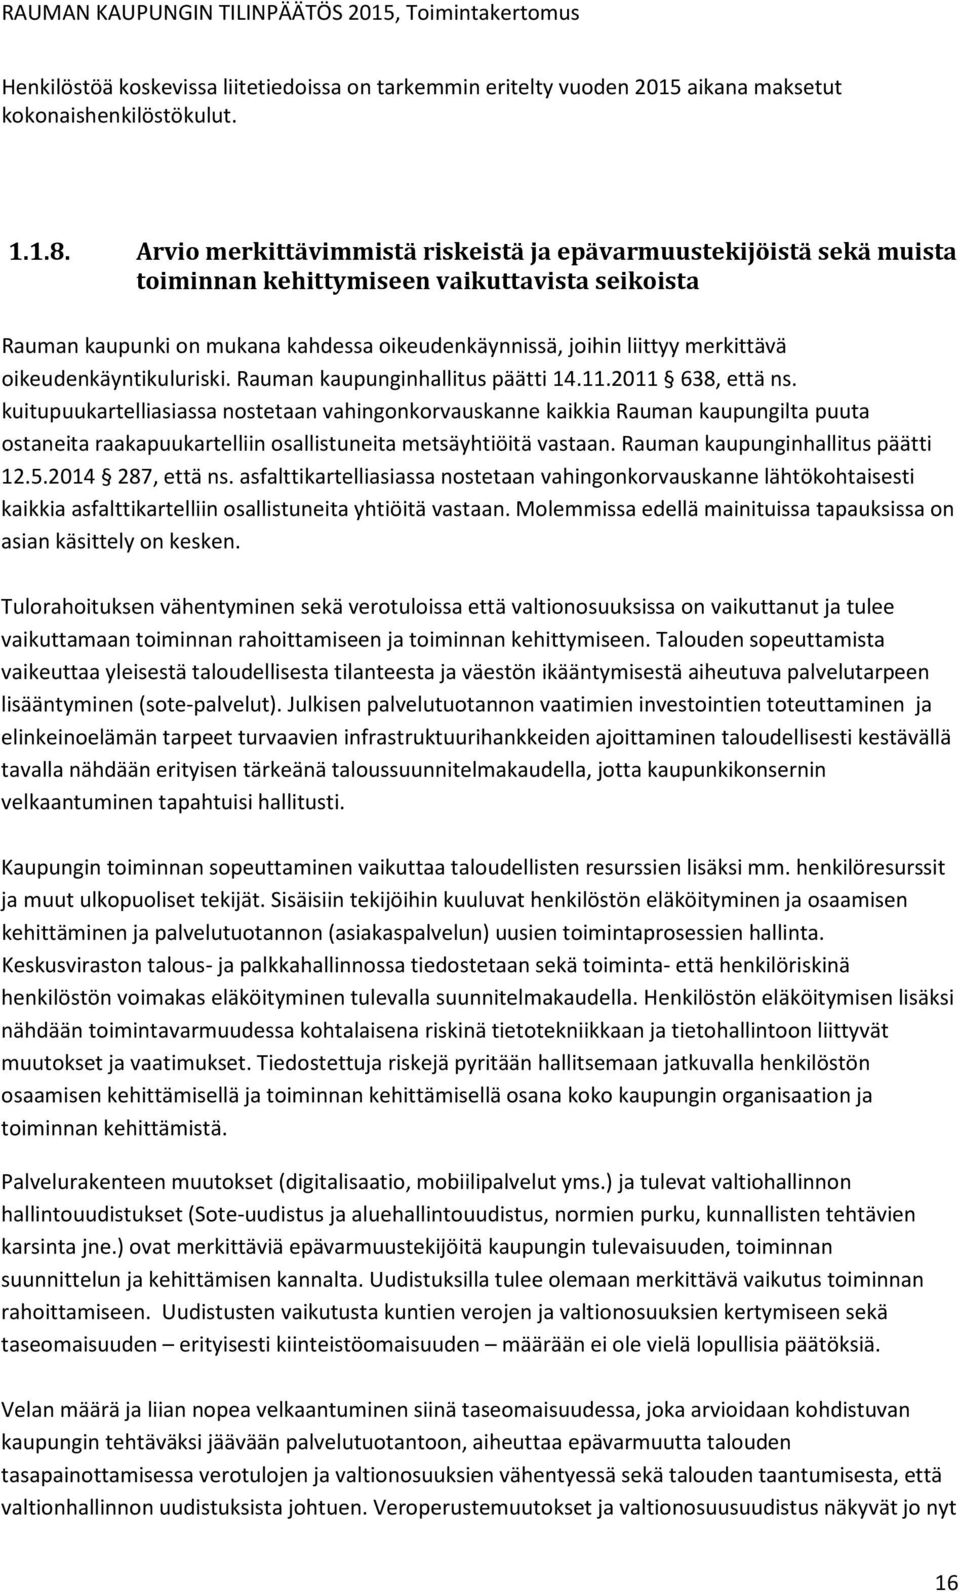 oikeudenkäyntikuluriski. Rauman kaupunginhallitus päätti 14.11.2011 638, että ns.